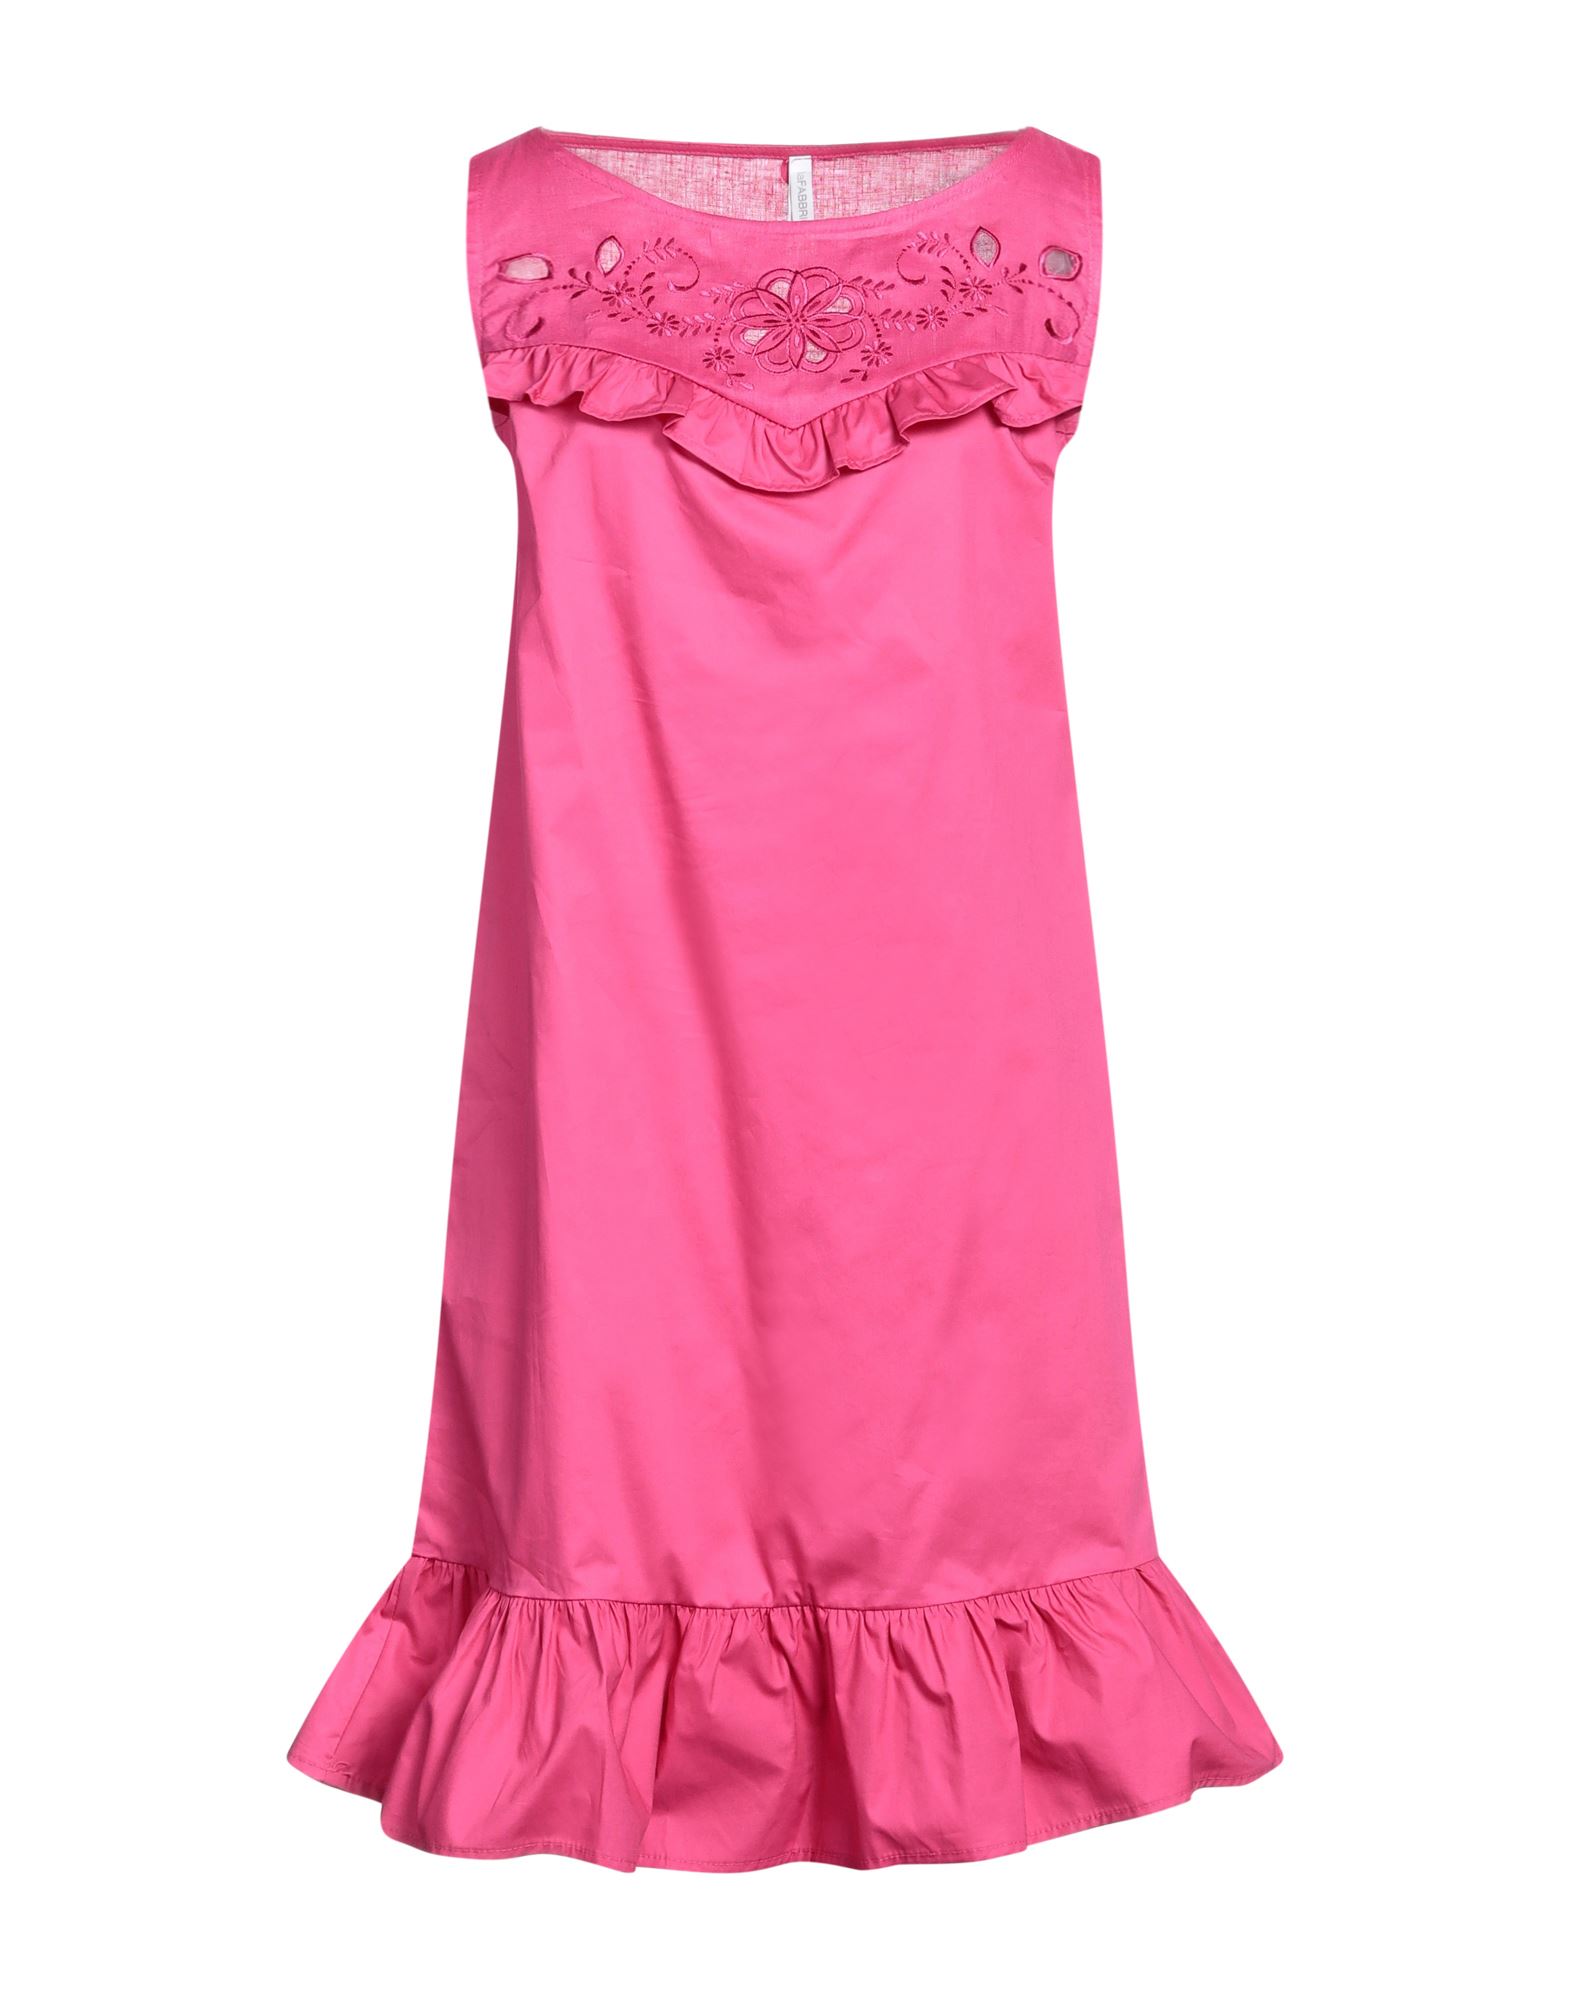 Lfdl Short Dresses In Pink